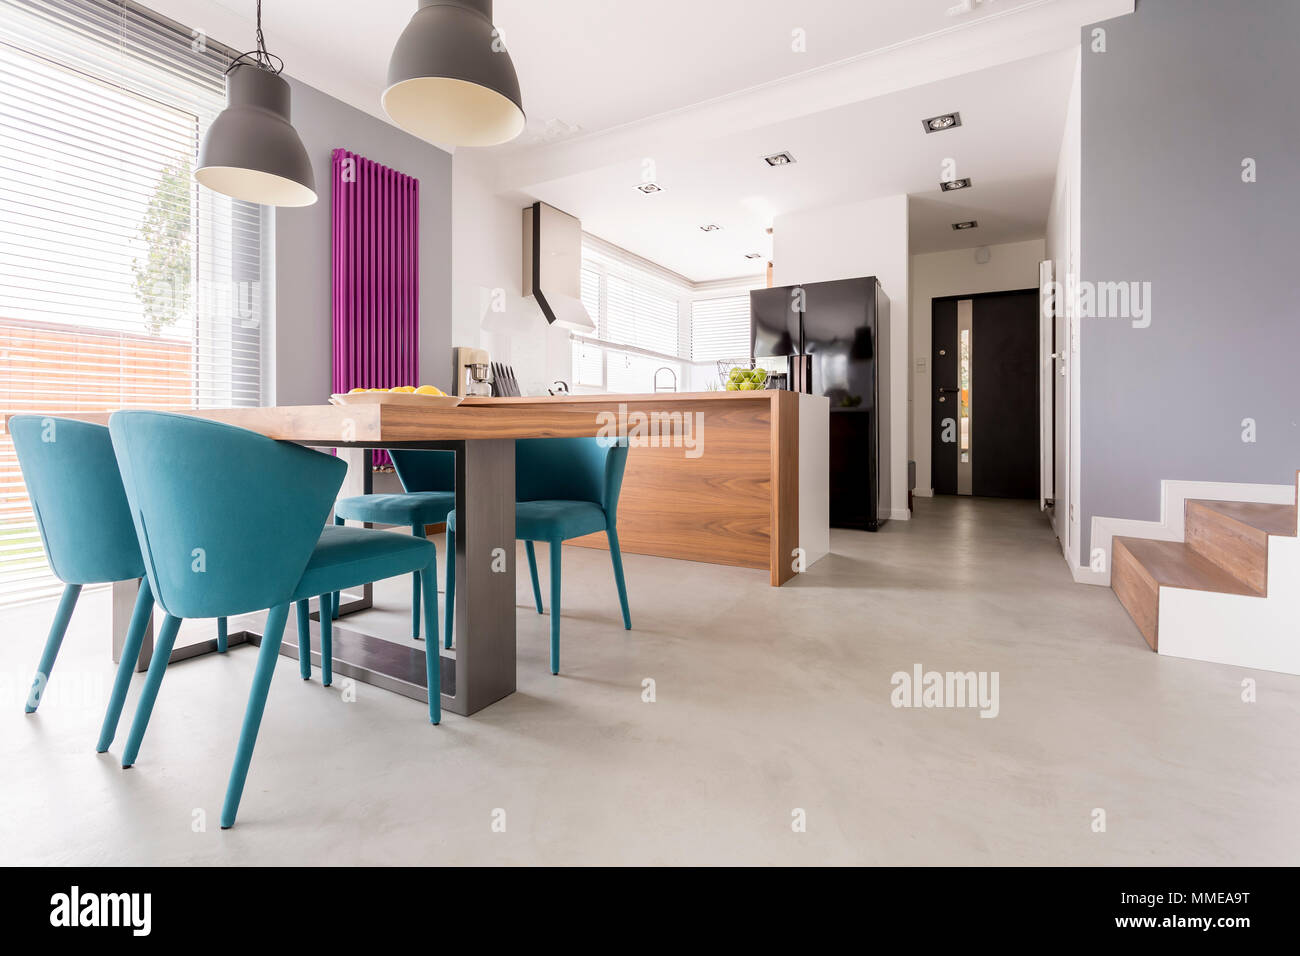 Cet appartement décloisonné moderne monochromatiques avec des accents en bois et en salle à manger et cuisine avec escalier et l'entrée de porte Banque D'Images